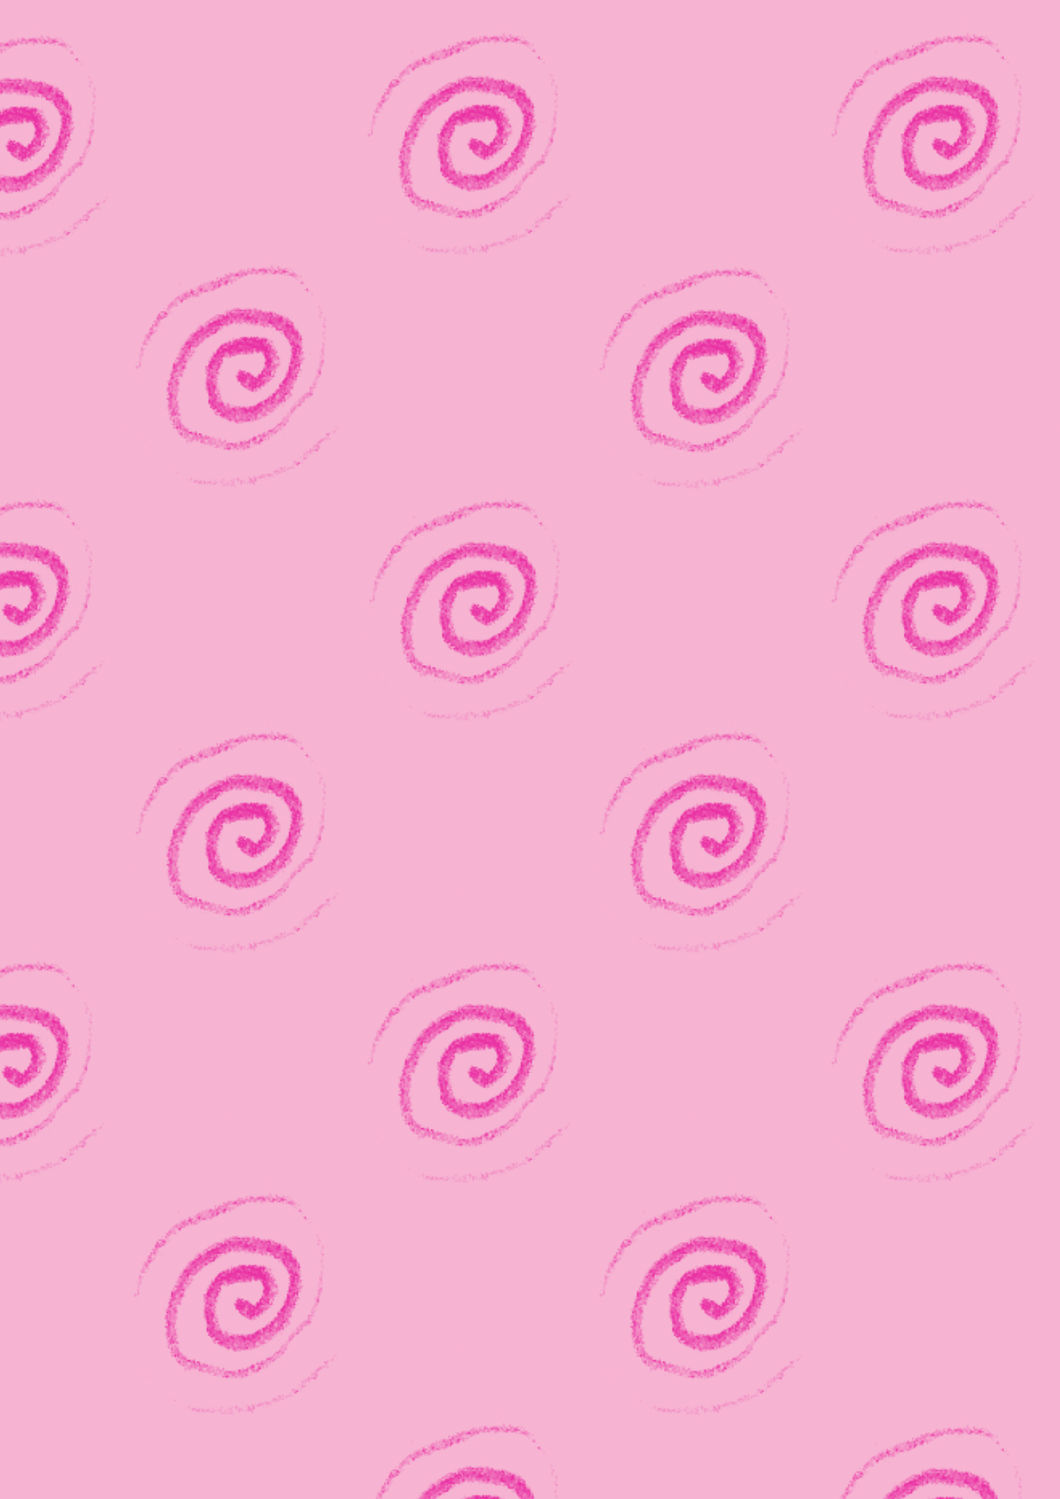 Bild mit Rosa, Hintergrund, Kinderzimmer, Schnecke, Spirale, Muster, Tapete, Hintergründe, pink, schneckenhaus, tapetenmuster, kinderzimmertapete, spiralenmuster